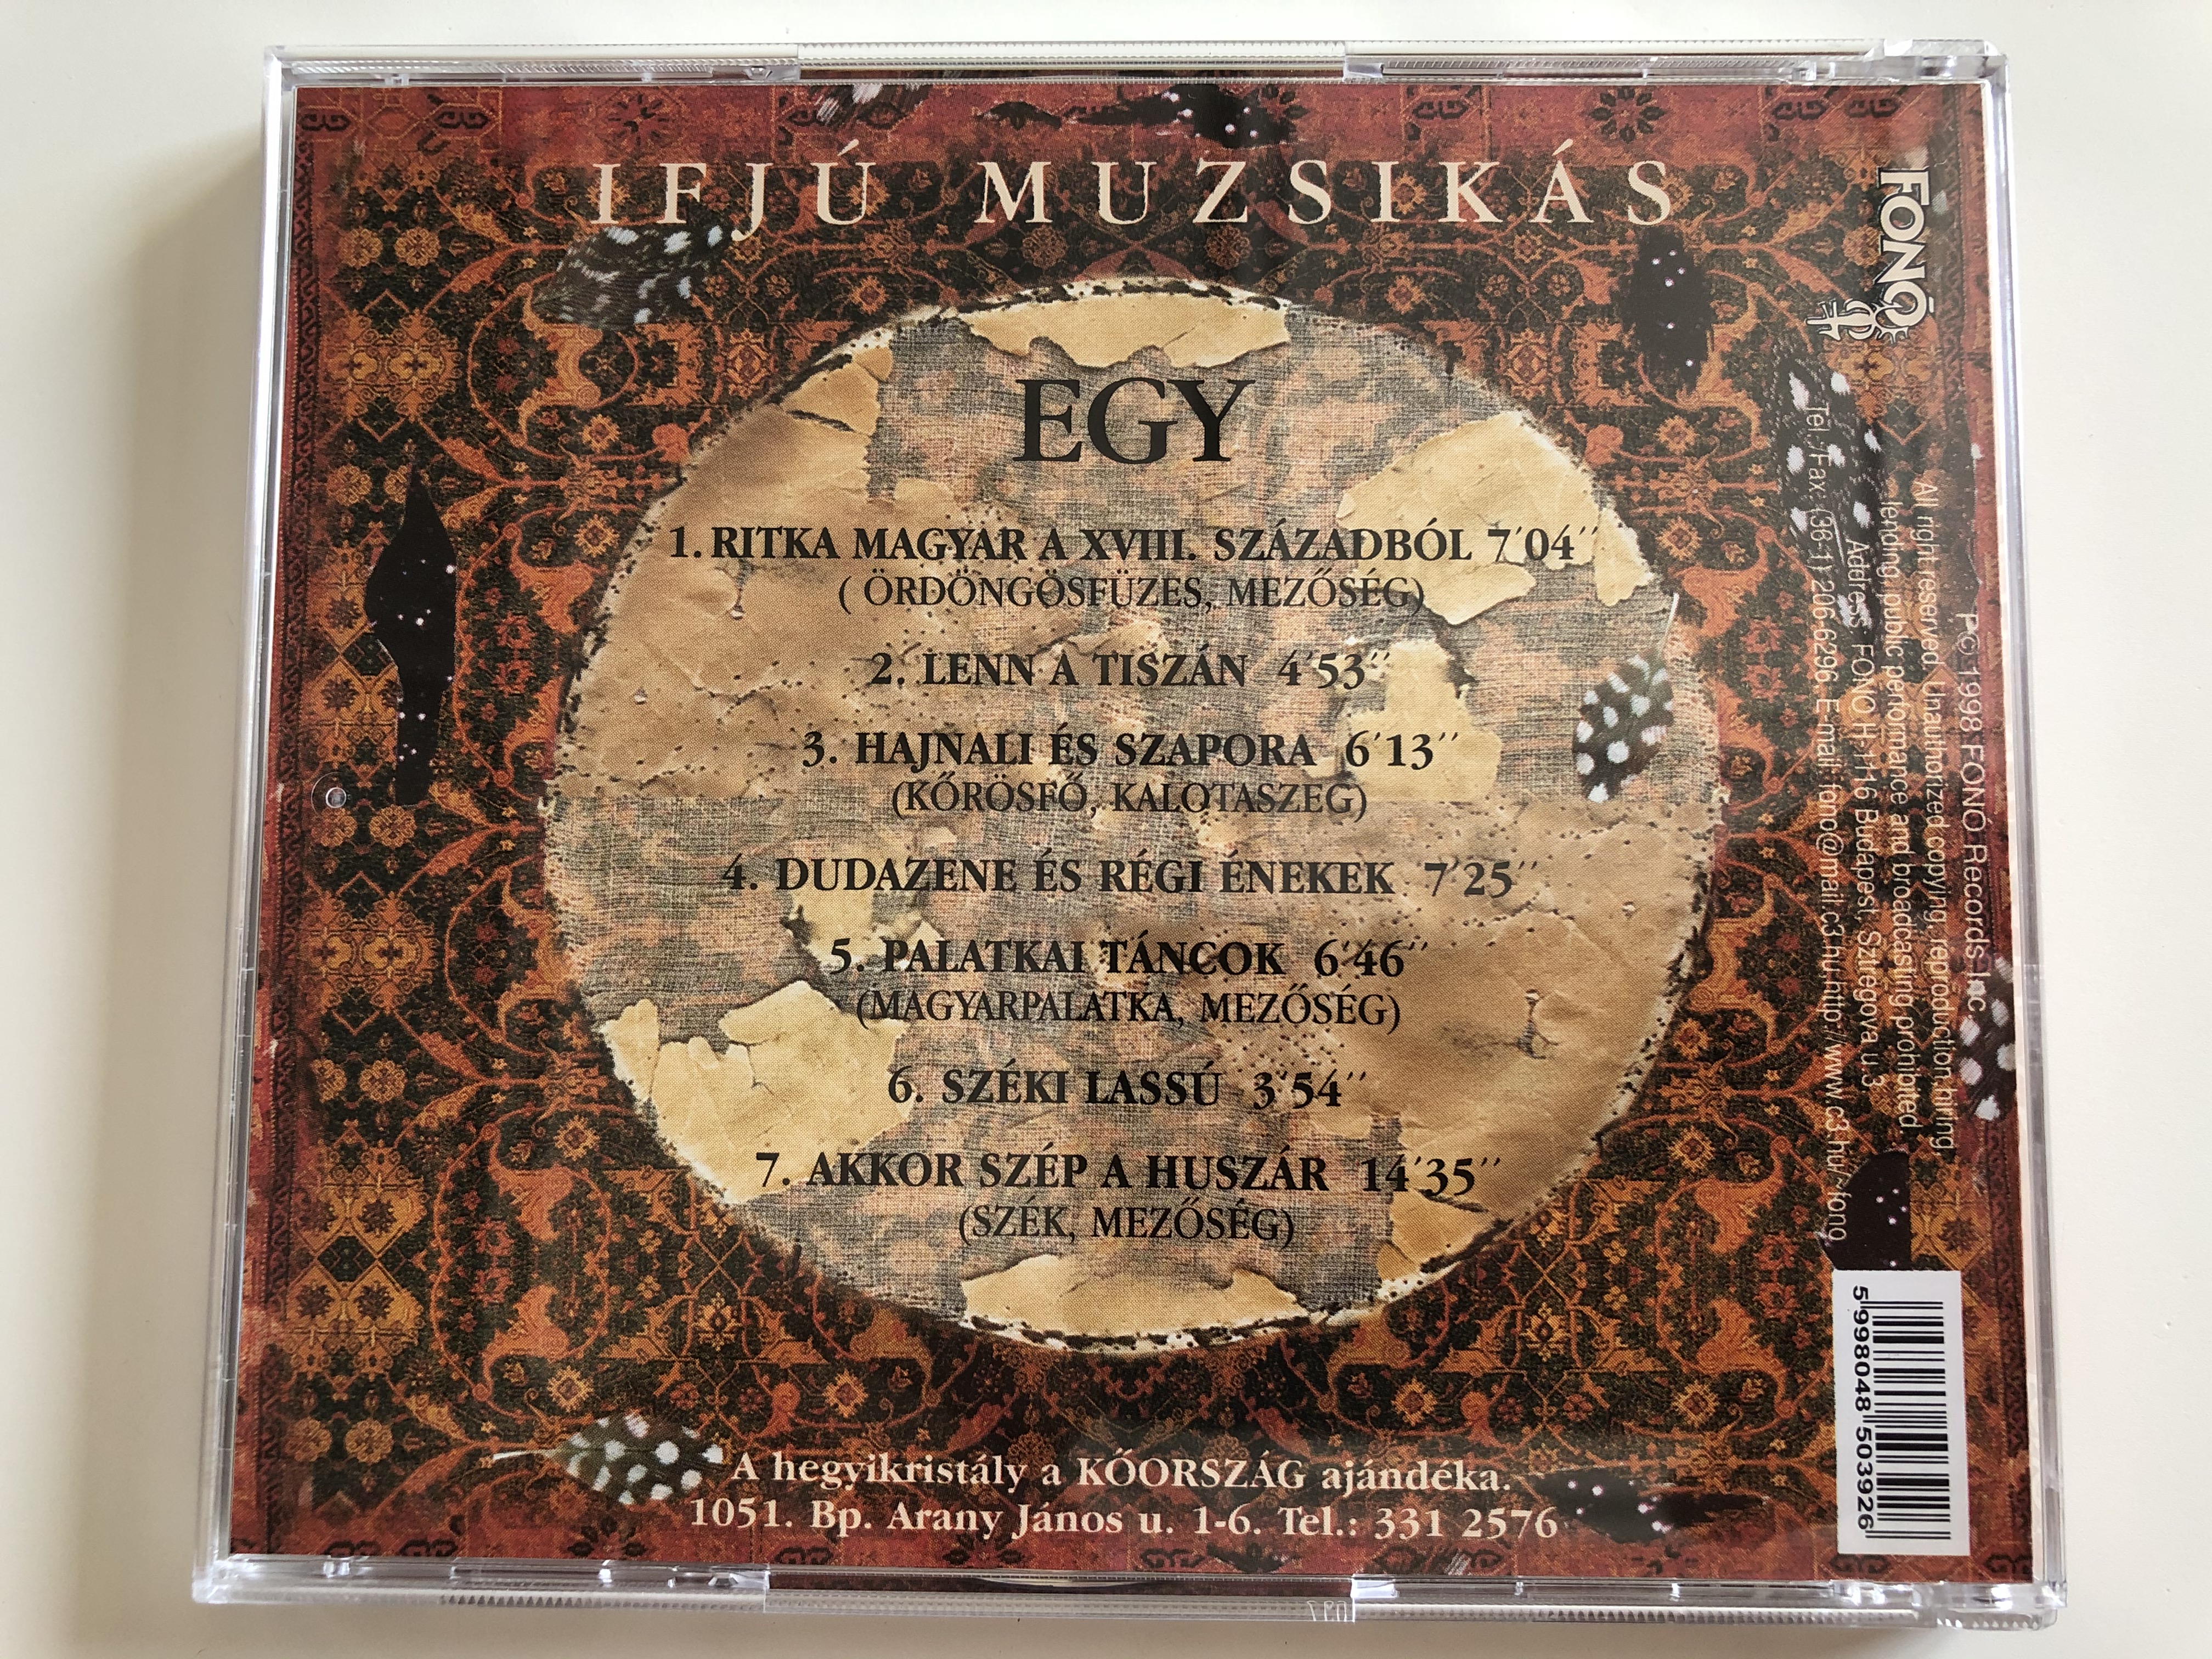 ifj-muzsik-s-egy-fon-records-audio-cd-1998-fa-039-2-9-.jpg